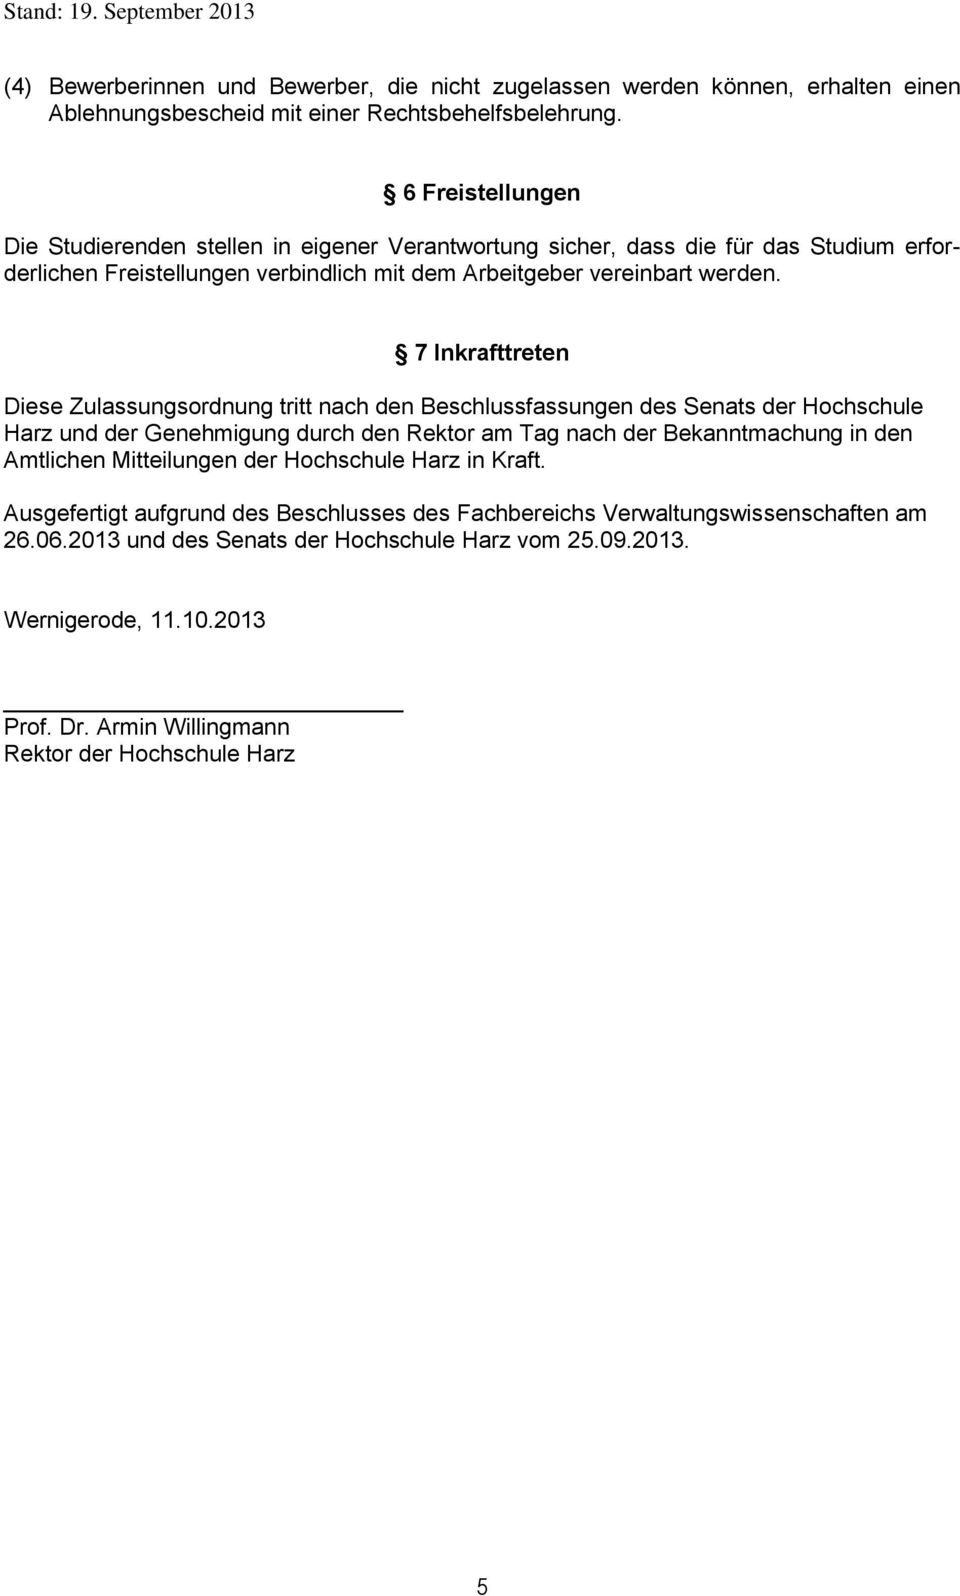 7 Inkrafttreten Diese Zulassungsordnung tritt nach den Beschlussfassungen des Senats der Hochschule Harz und der Genehmigung durch den Rektor am Tag nach der Bekanntmachung in den Amtlichen